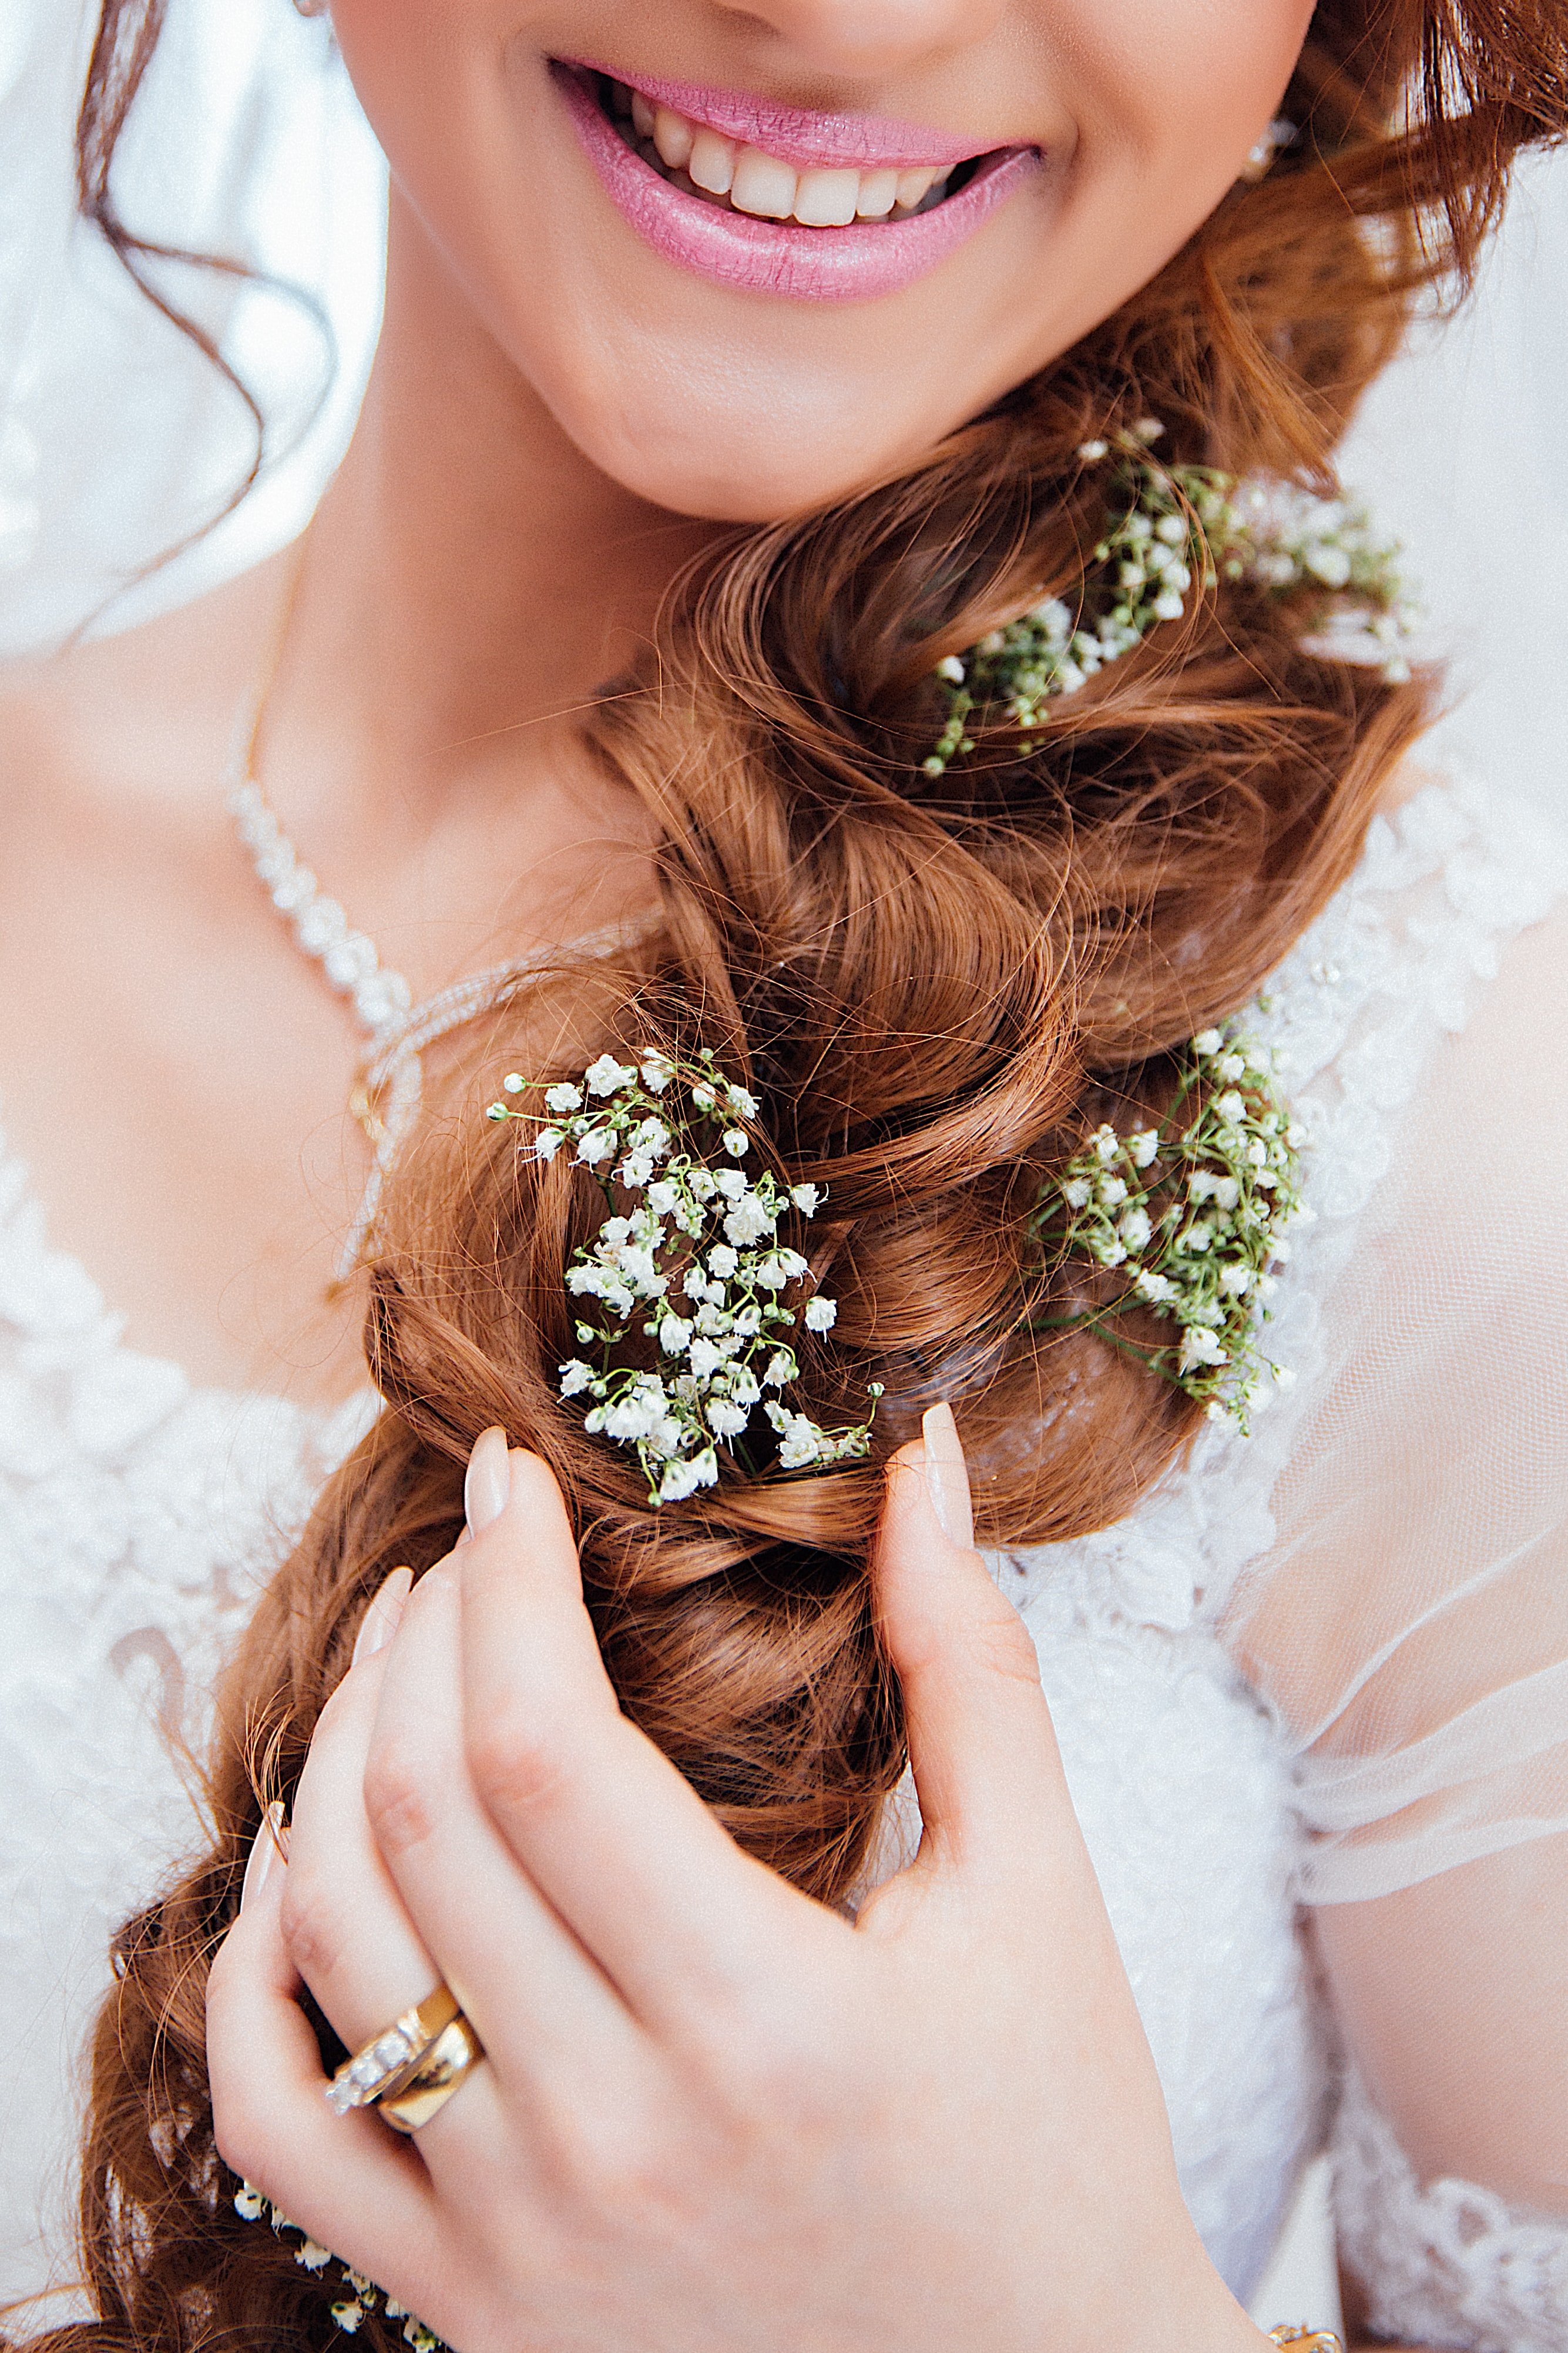 Une coiffure printanière pour un mariage doux au printemps, des fleurs dans les cheveux avec un tresse